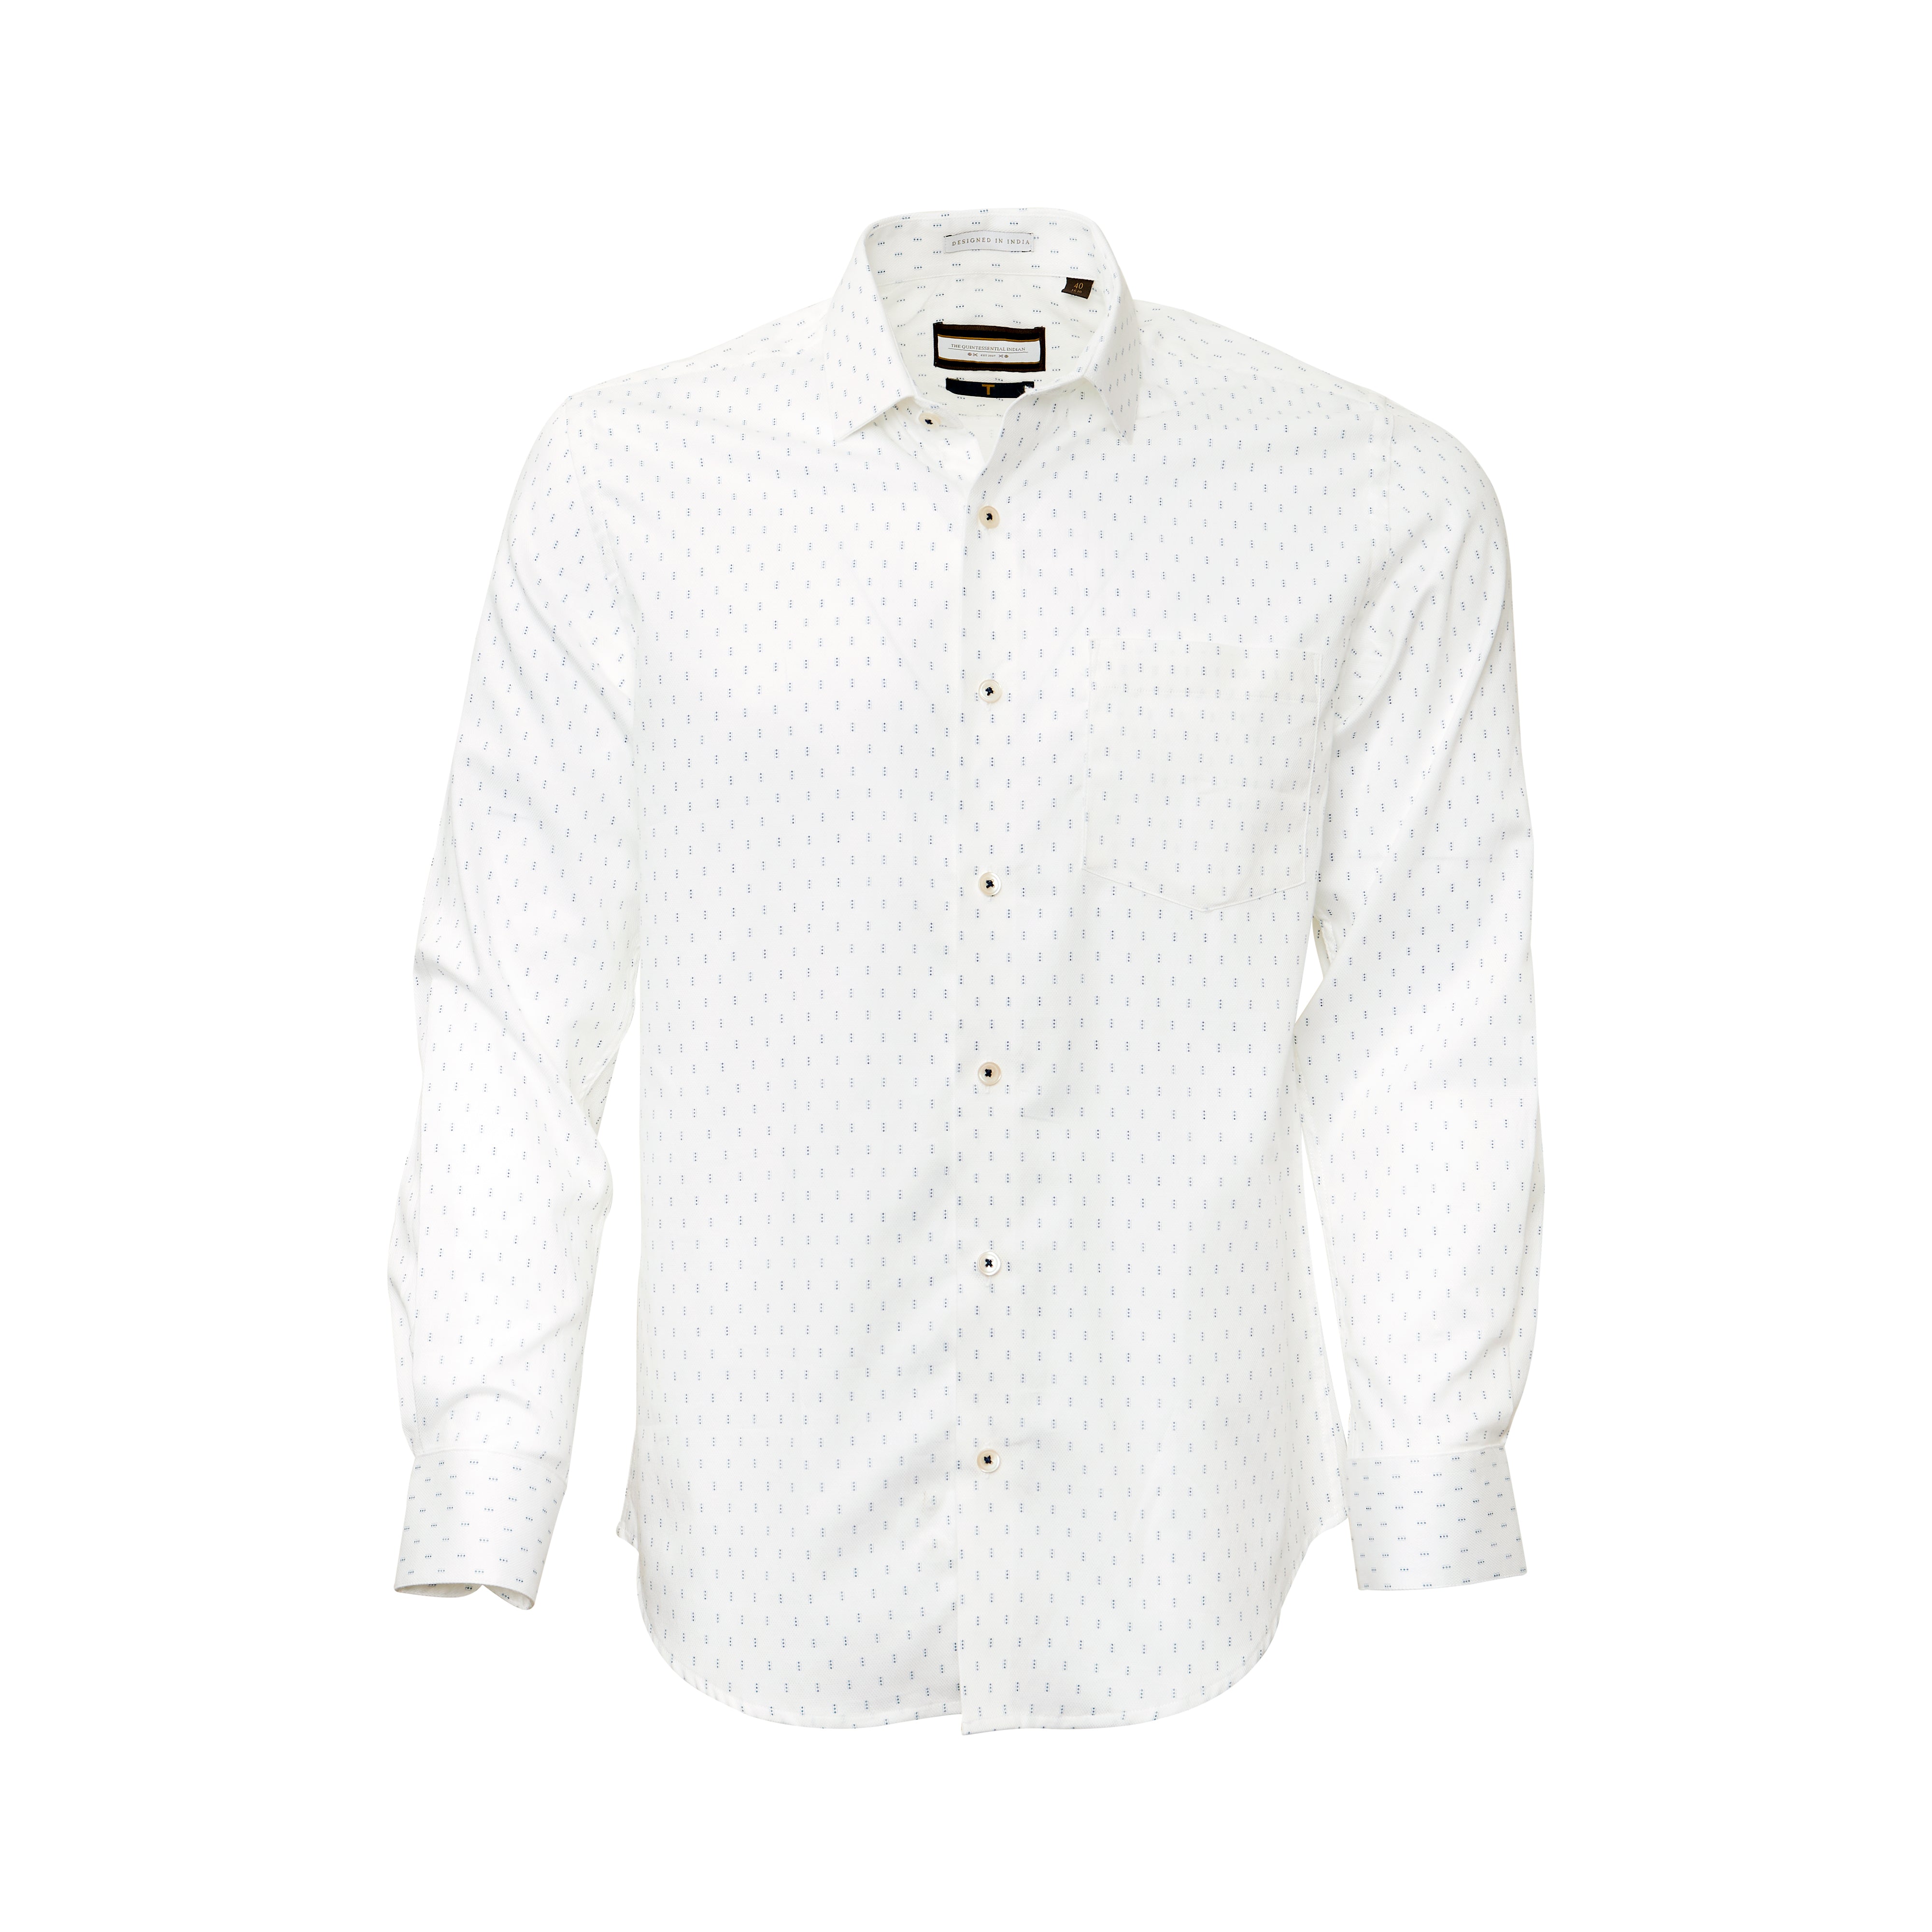 Printed Dobby White Full-sleeved shirt